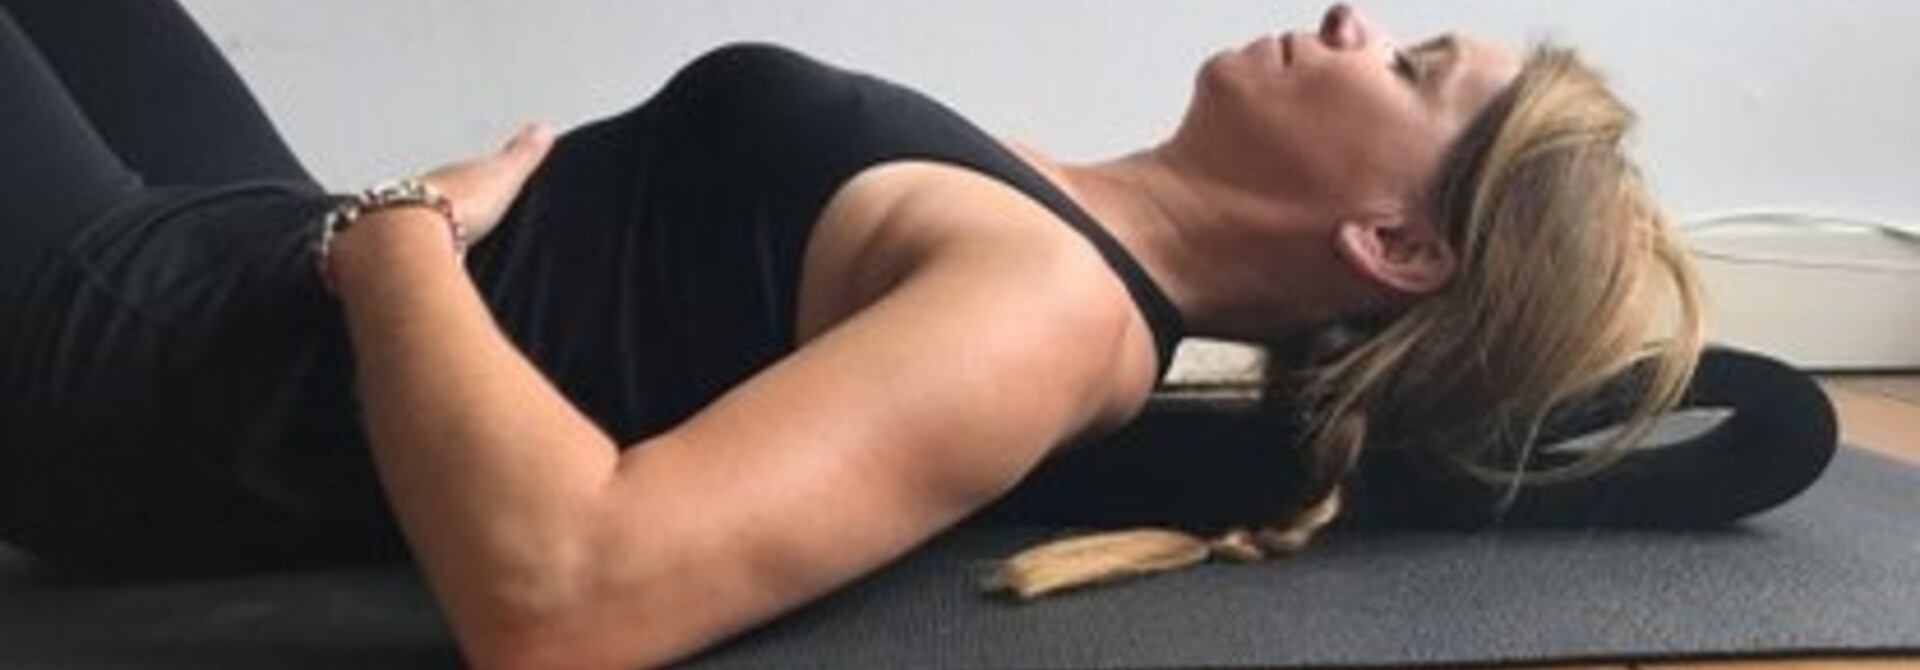 Hoe gebruik je een yogastrip?